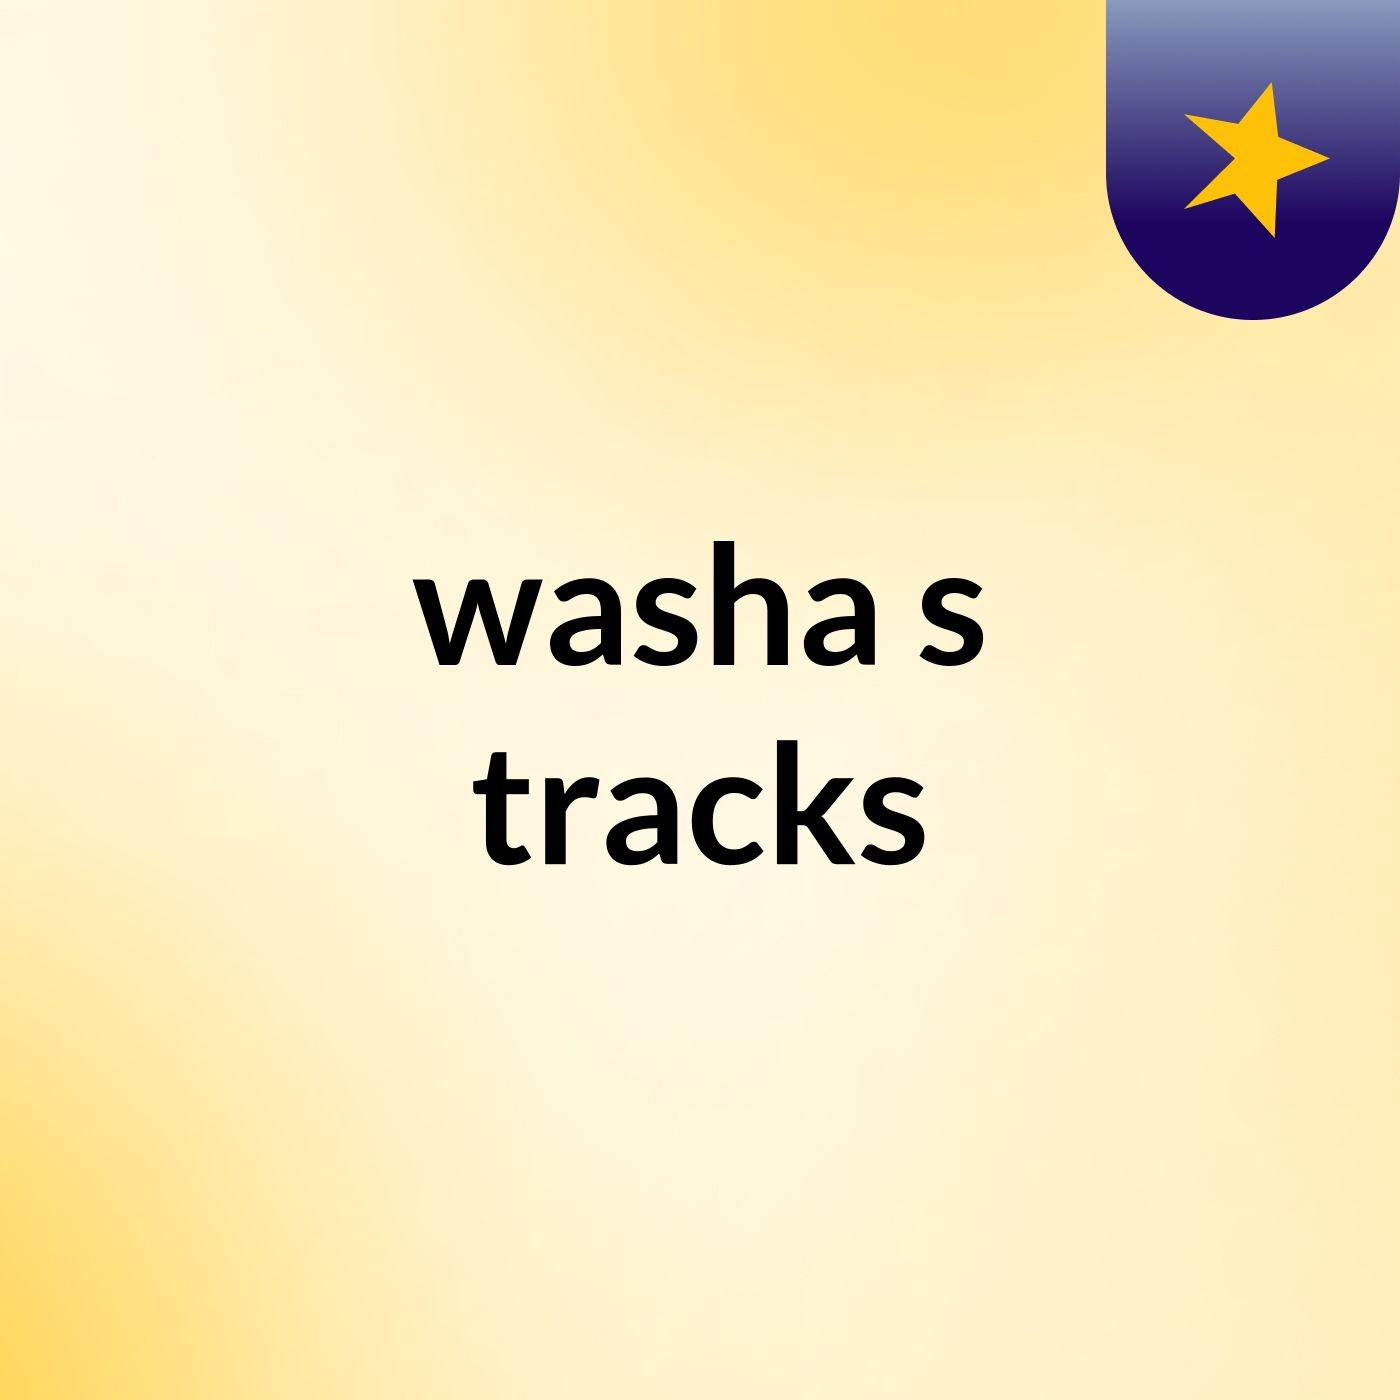 washa's tracks